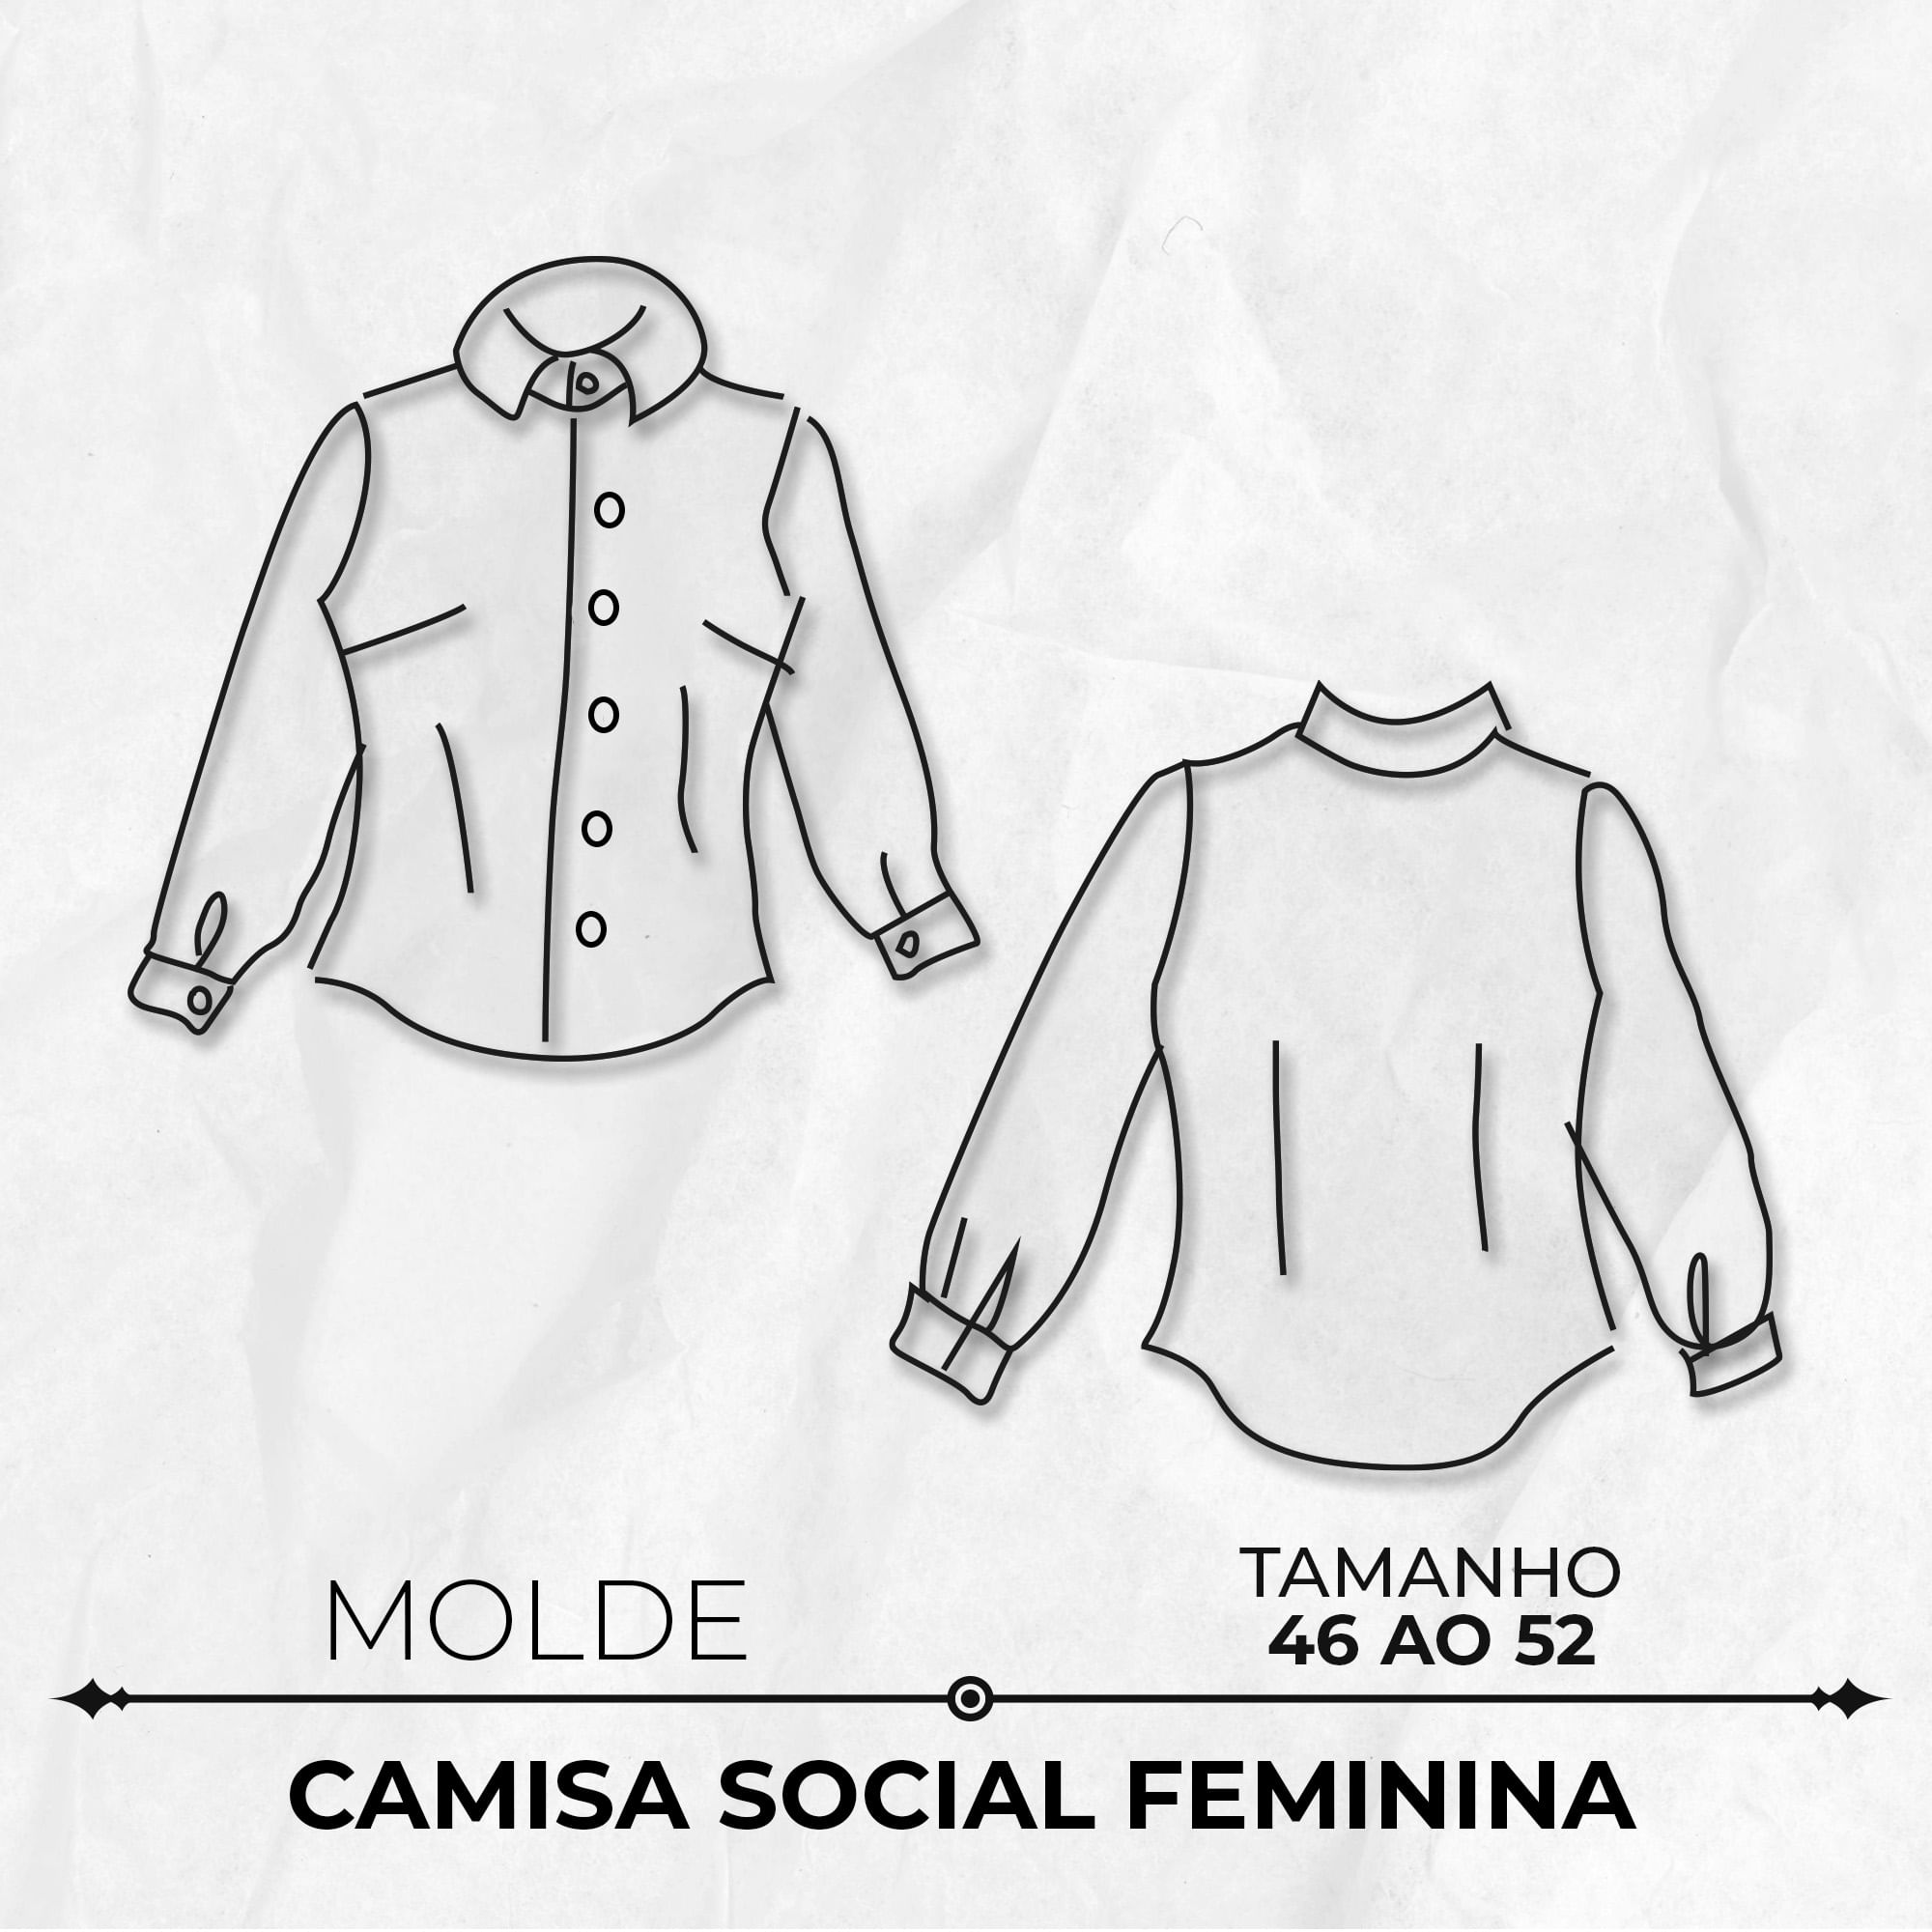 Molde camisa social feminina tamanho 46 ao 52 by Marlene Mukai